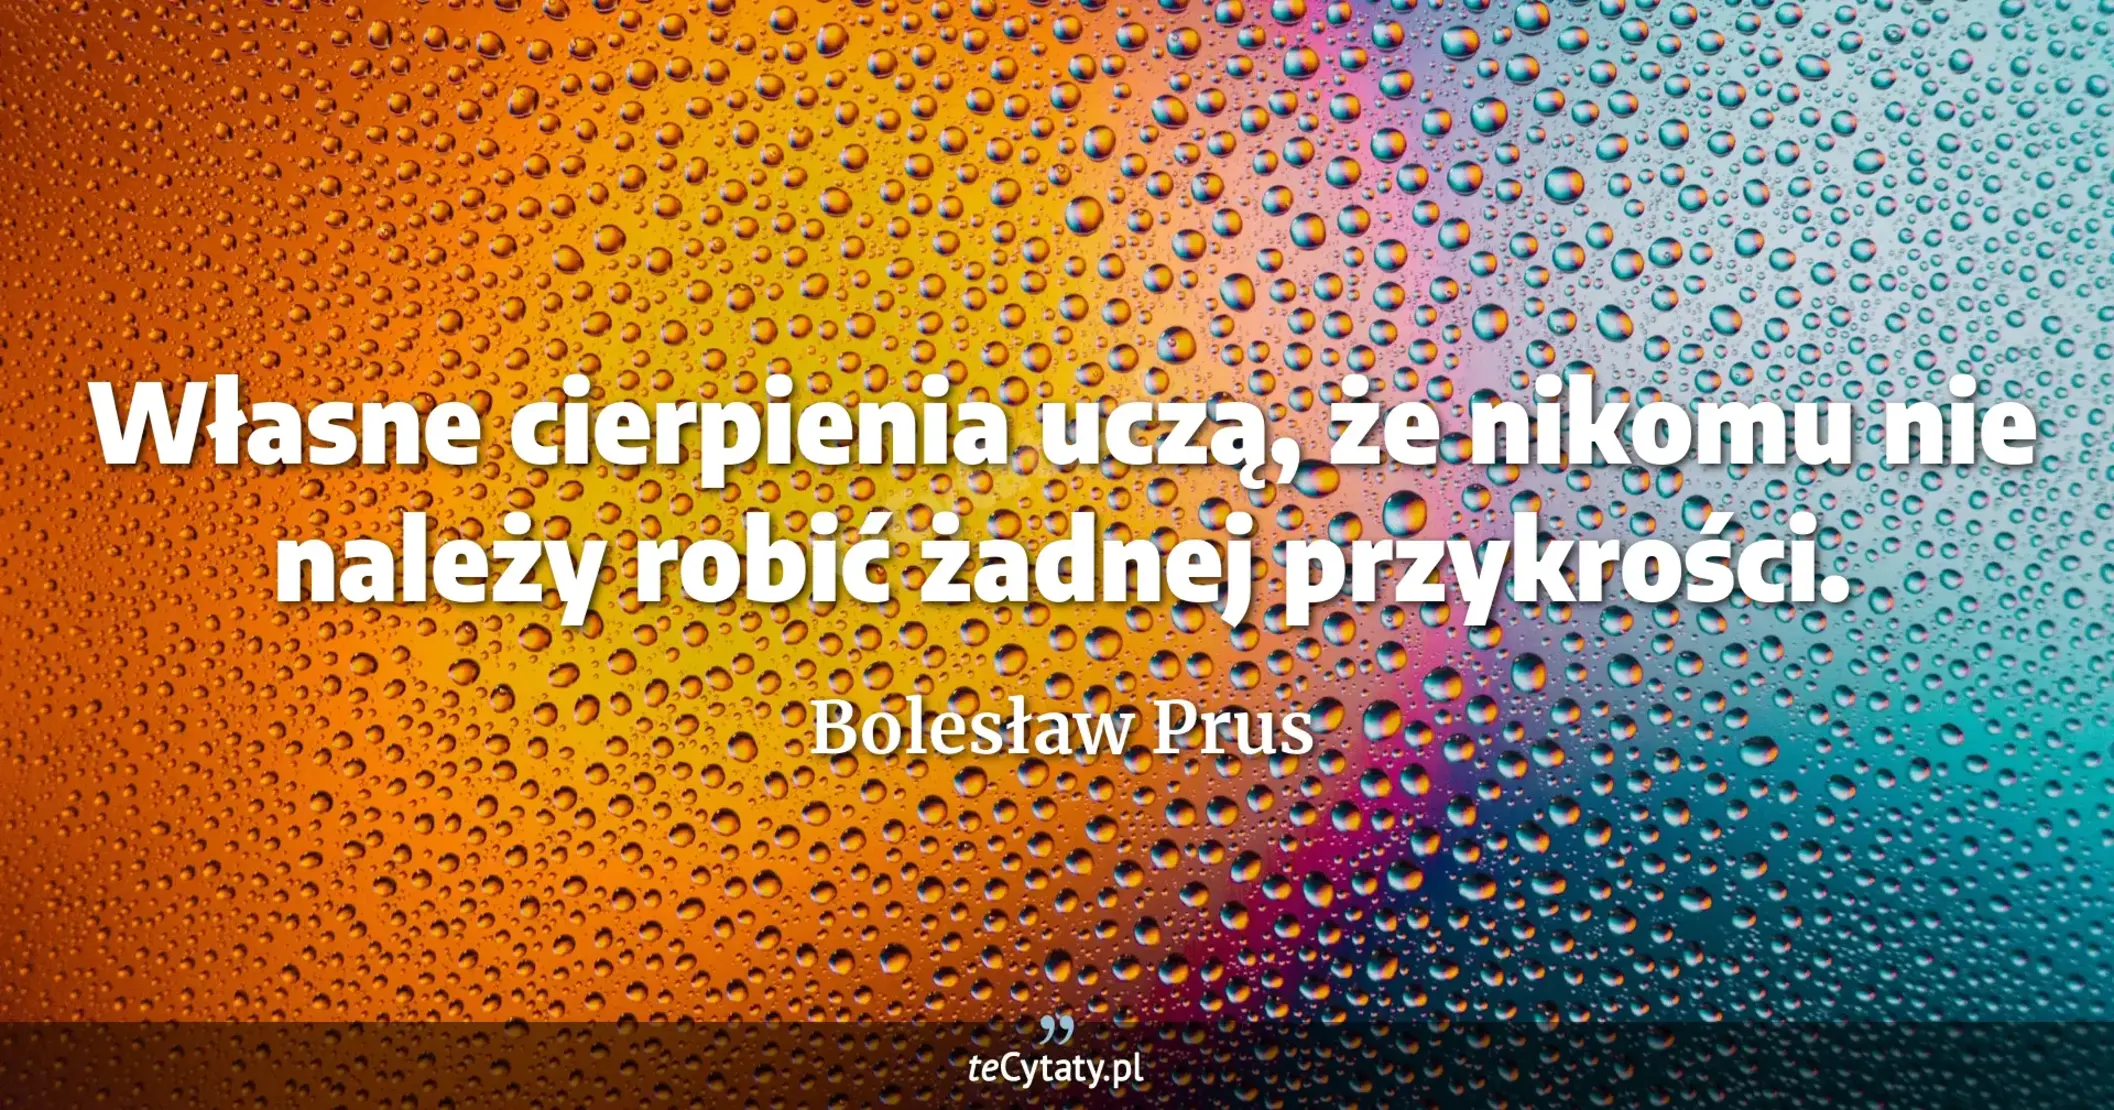 Własne cierpienia uczą, że nikomu nie należy robić żadnej przykrości. - Bolesław Prus